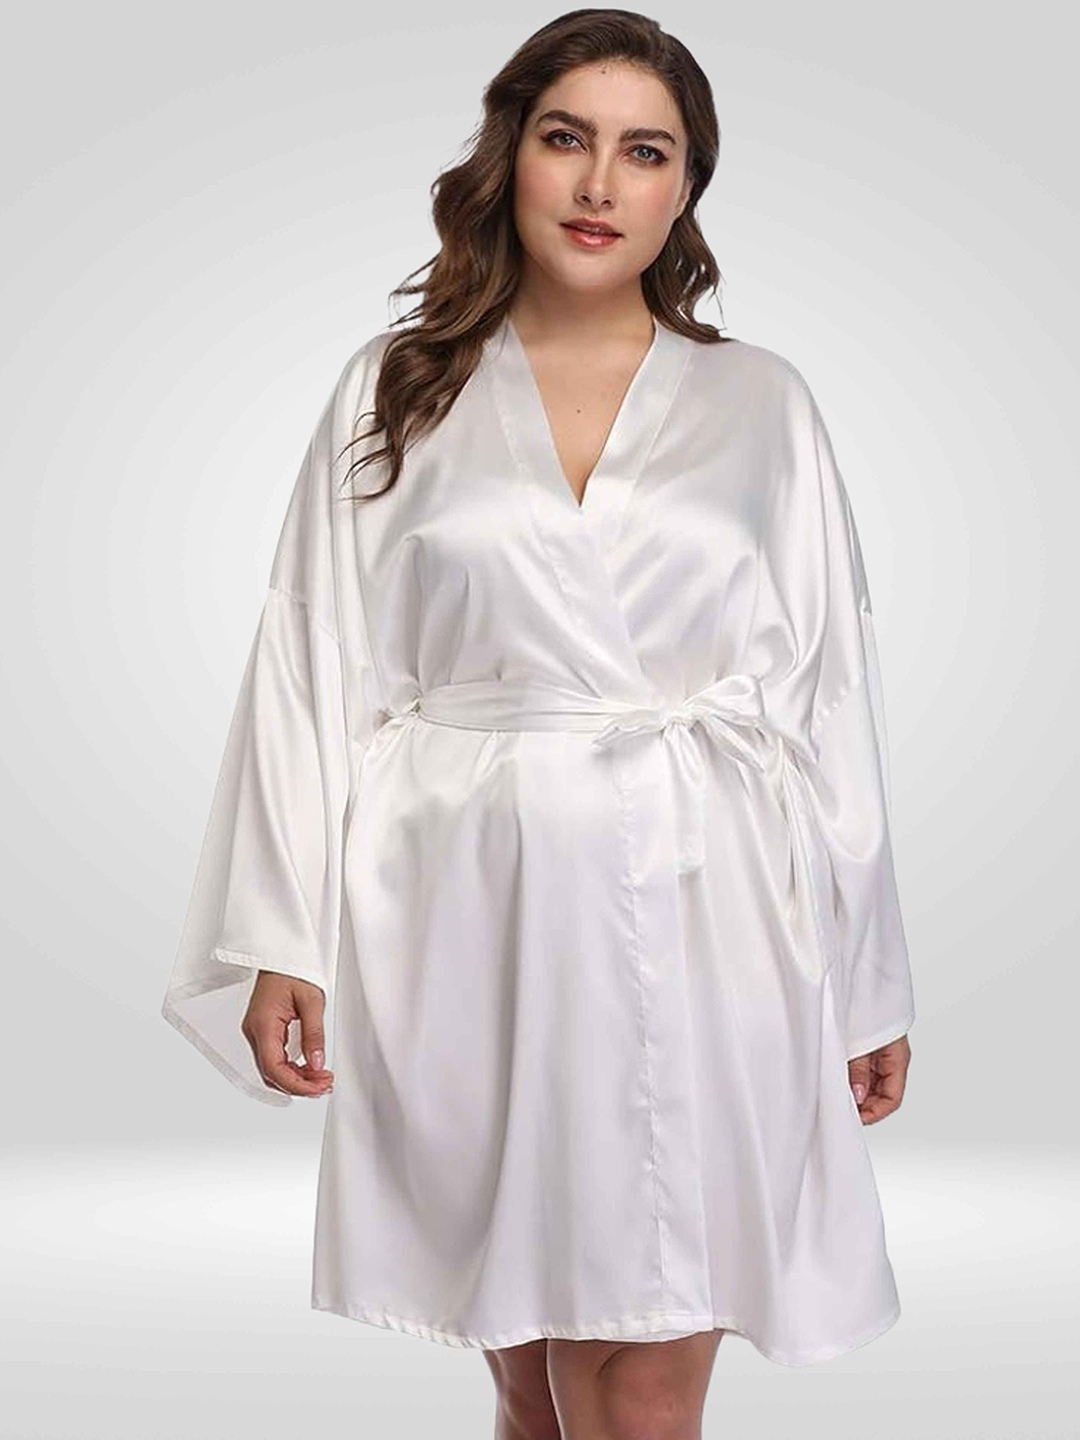 

Bella Babe by SK Plus Size Kimono Sleeves Satin Robe, White